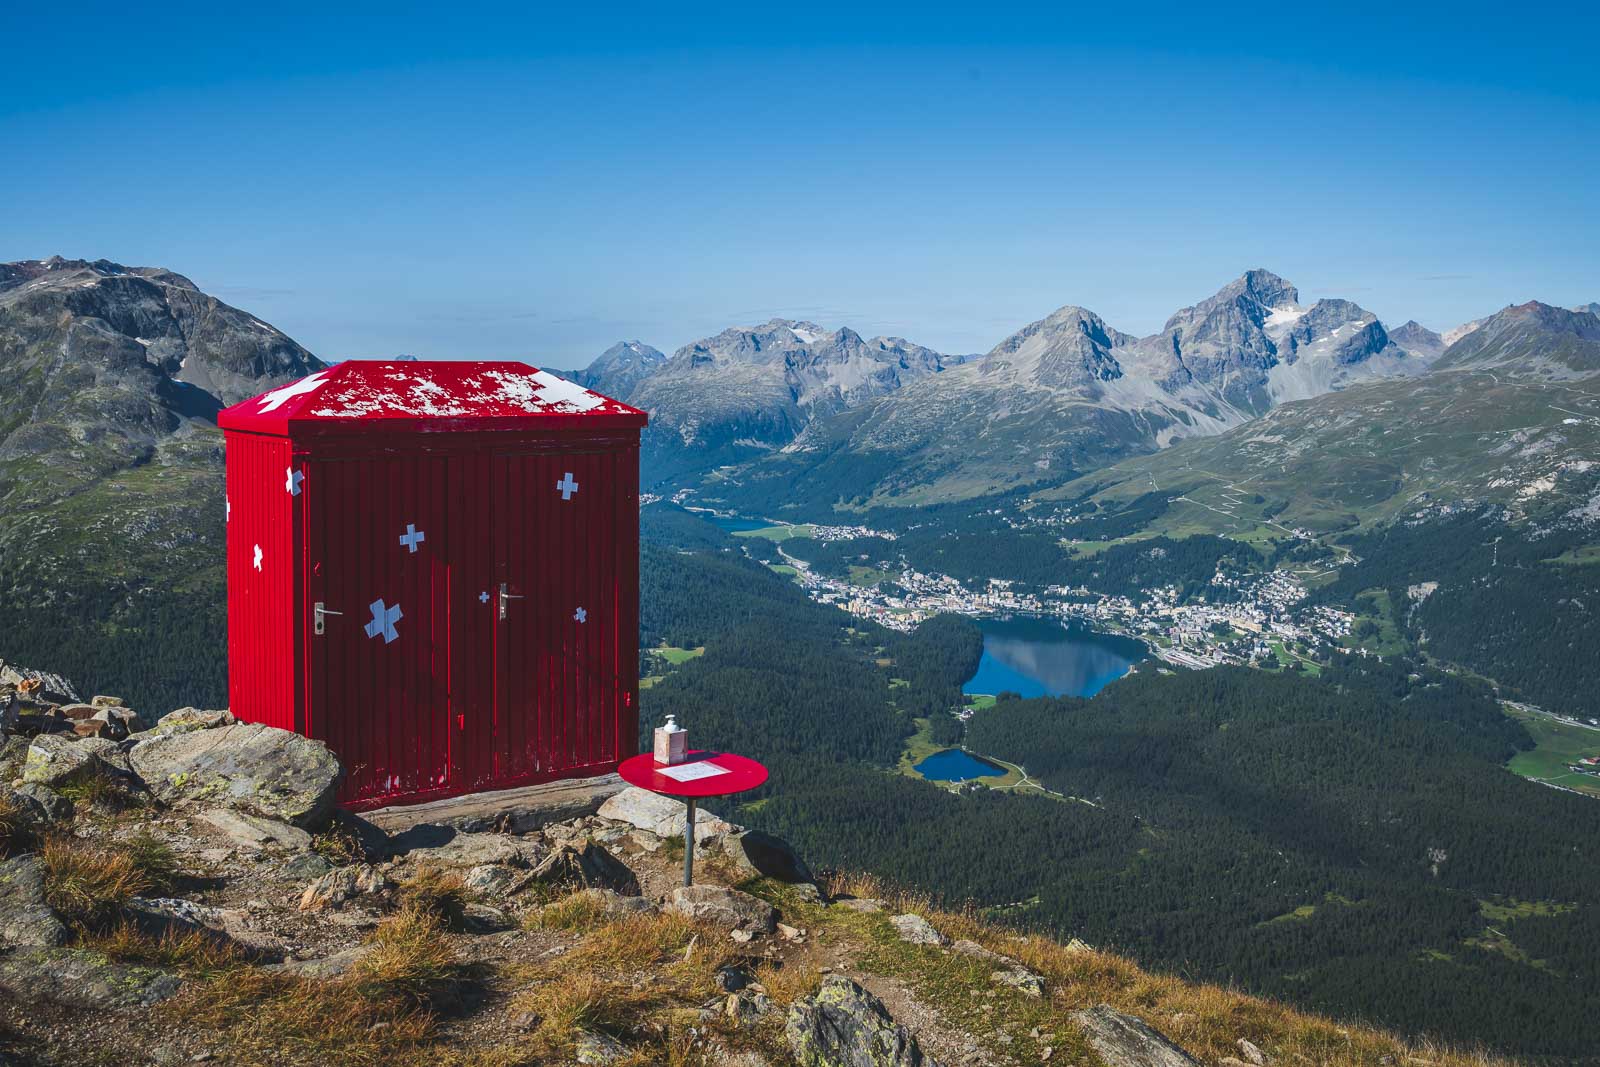 St. Moritz - Summer Fun in Switzerland